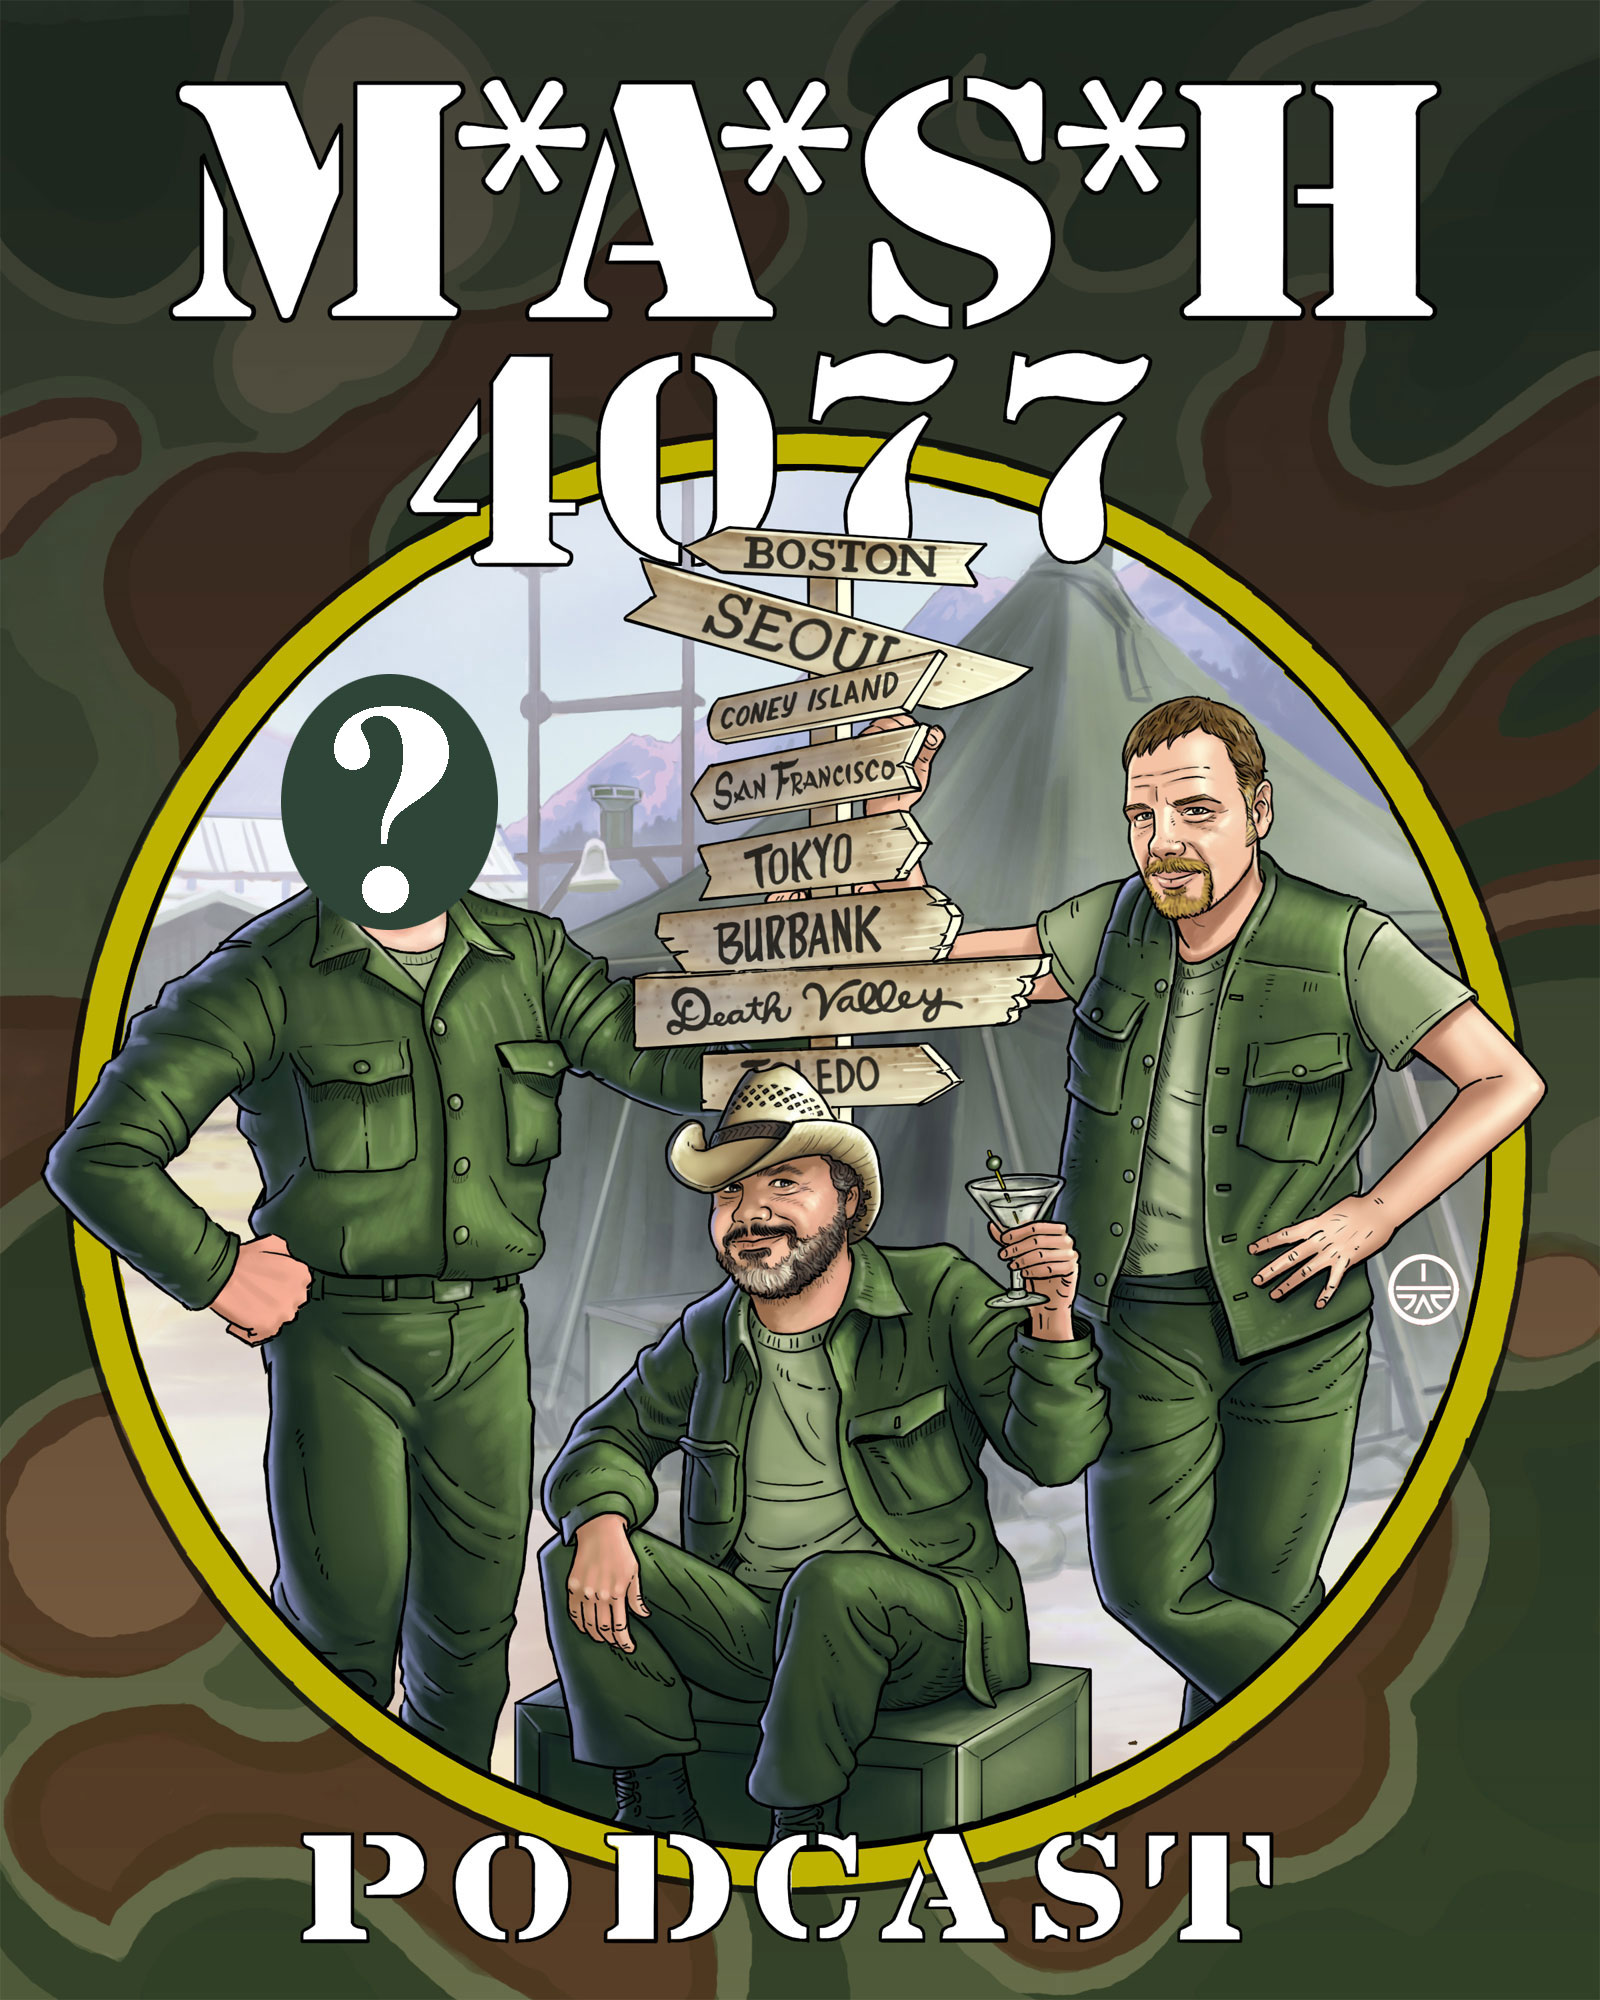 MASH 4077 Podcast Episode 135